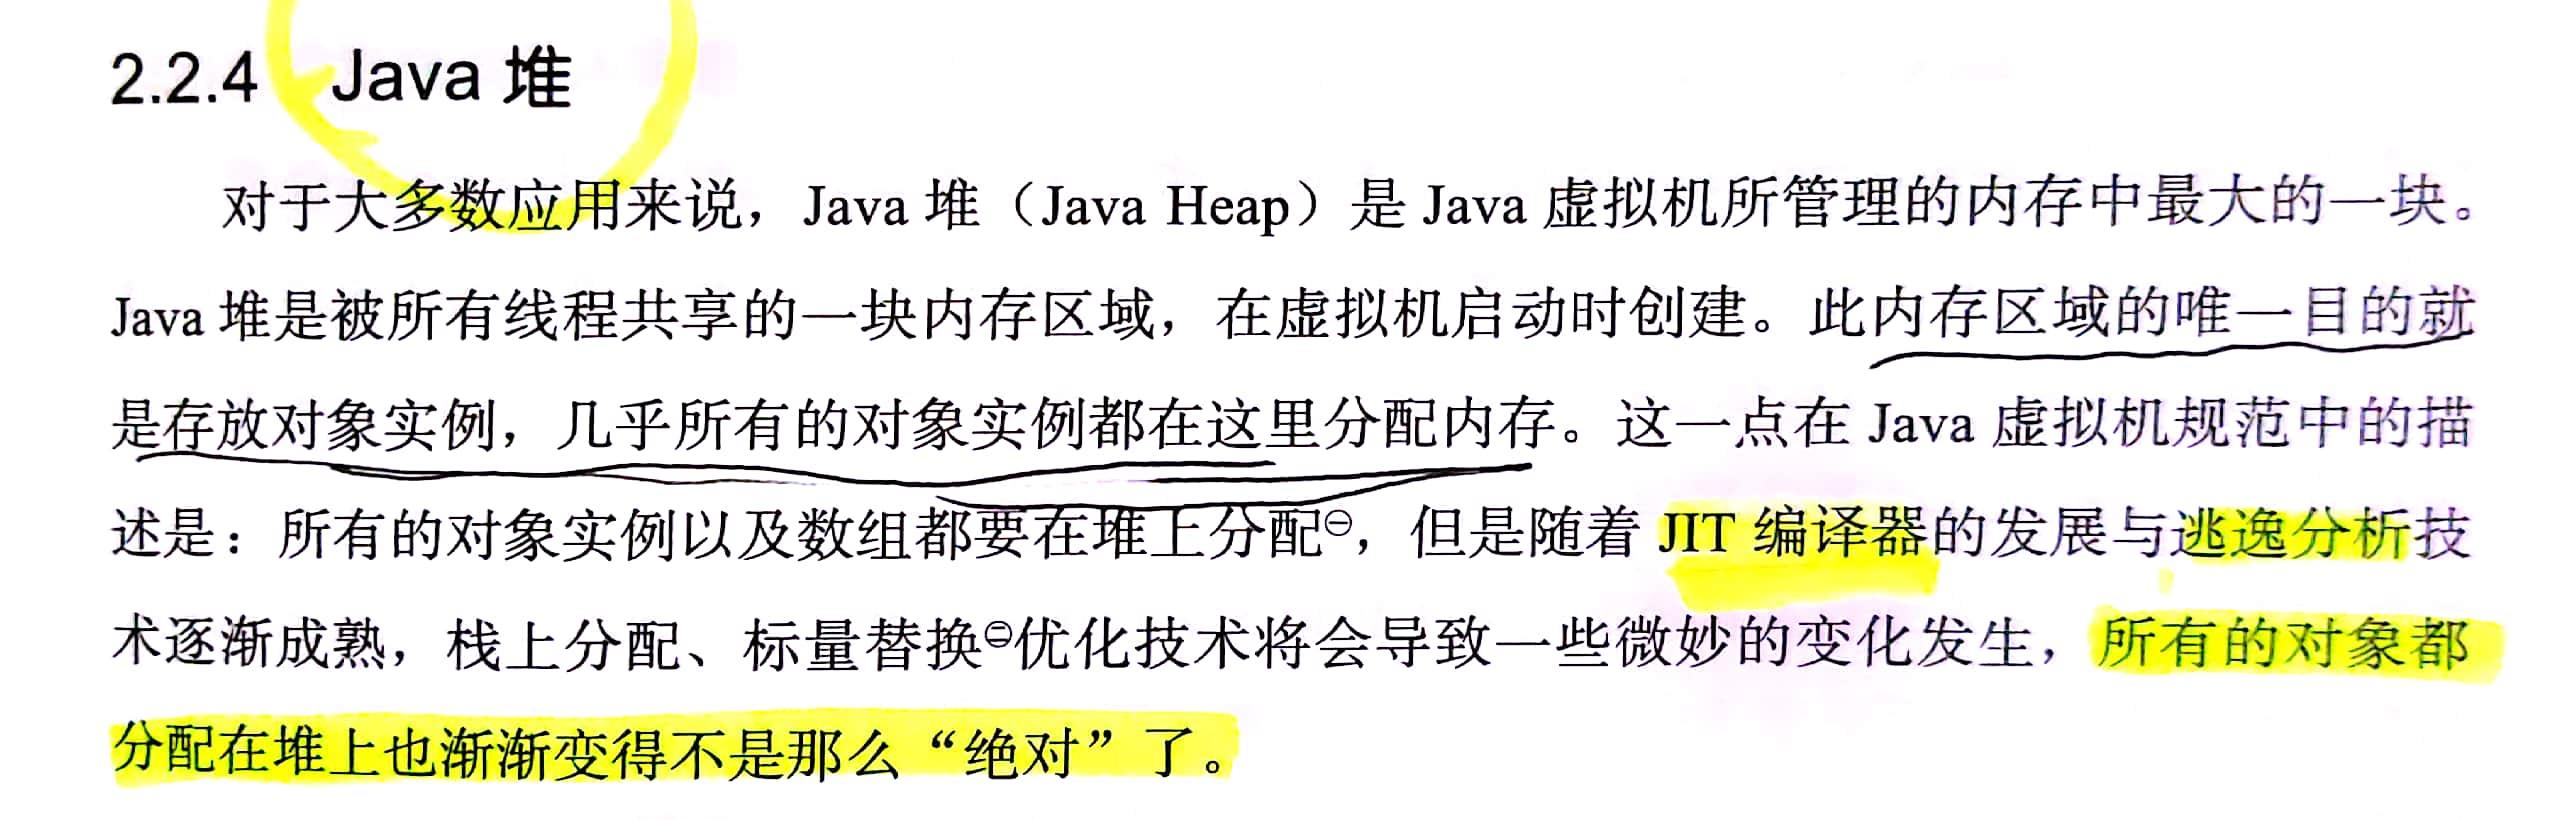 《深入理解Java虚拟机》第 3 版里面到底多了哪些知识点？本文竟然得到了本书作者的认可！ - 文章图片